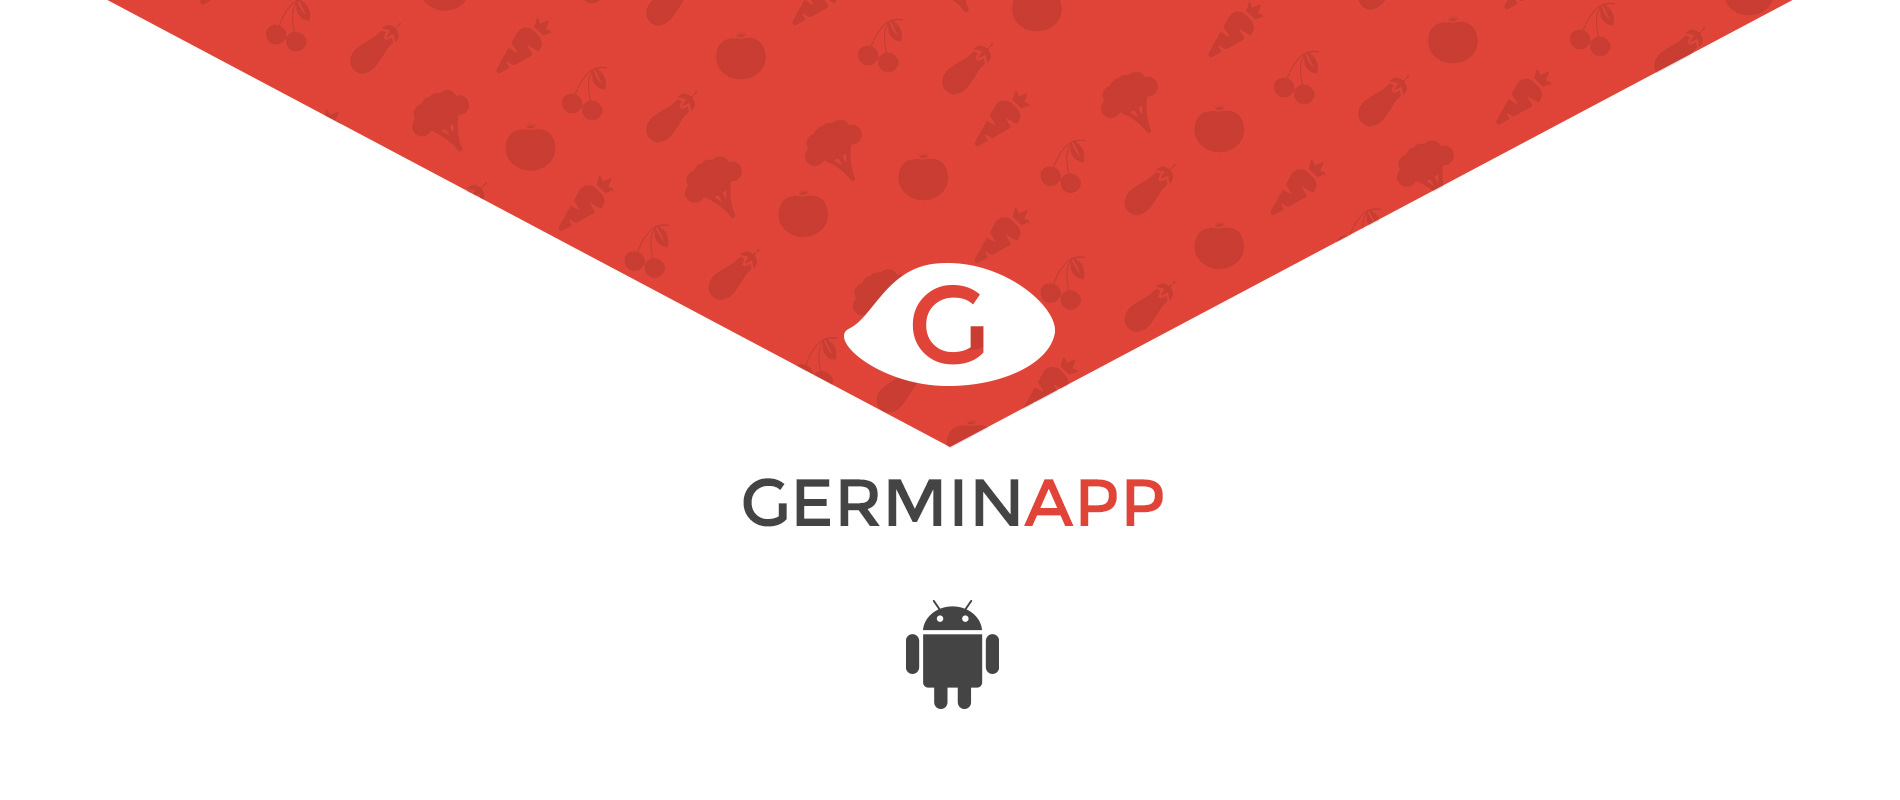 Nasce l'app che coadiuva il lavoro dei tecnici agronomi 'Germinapp'